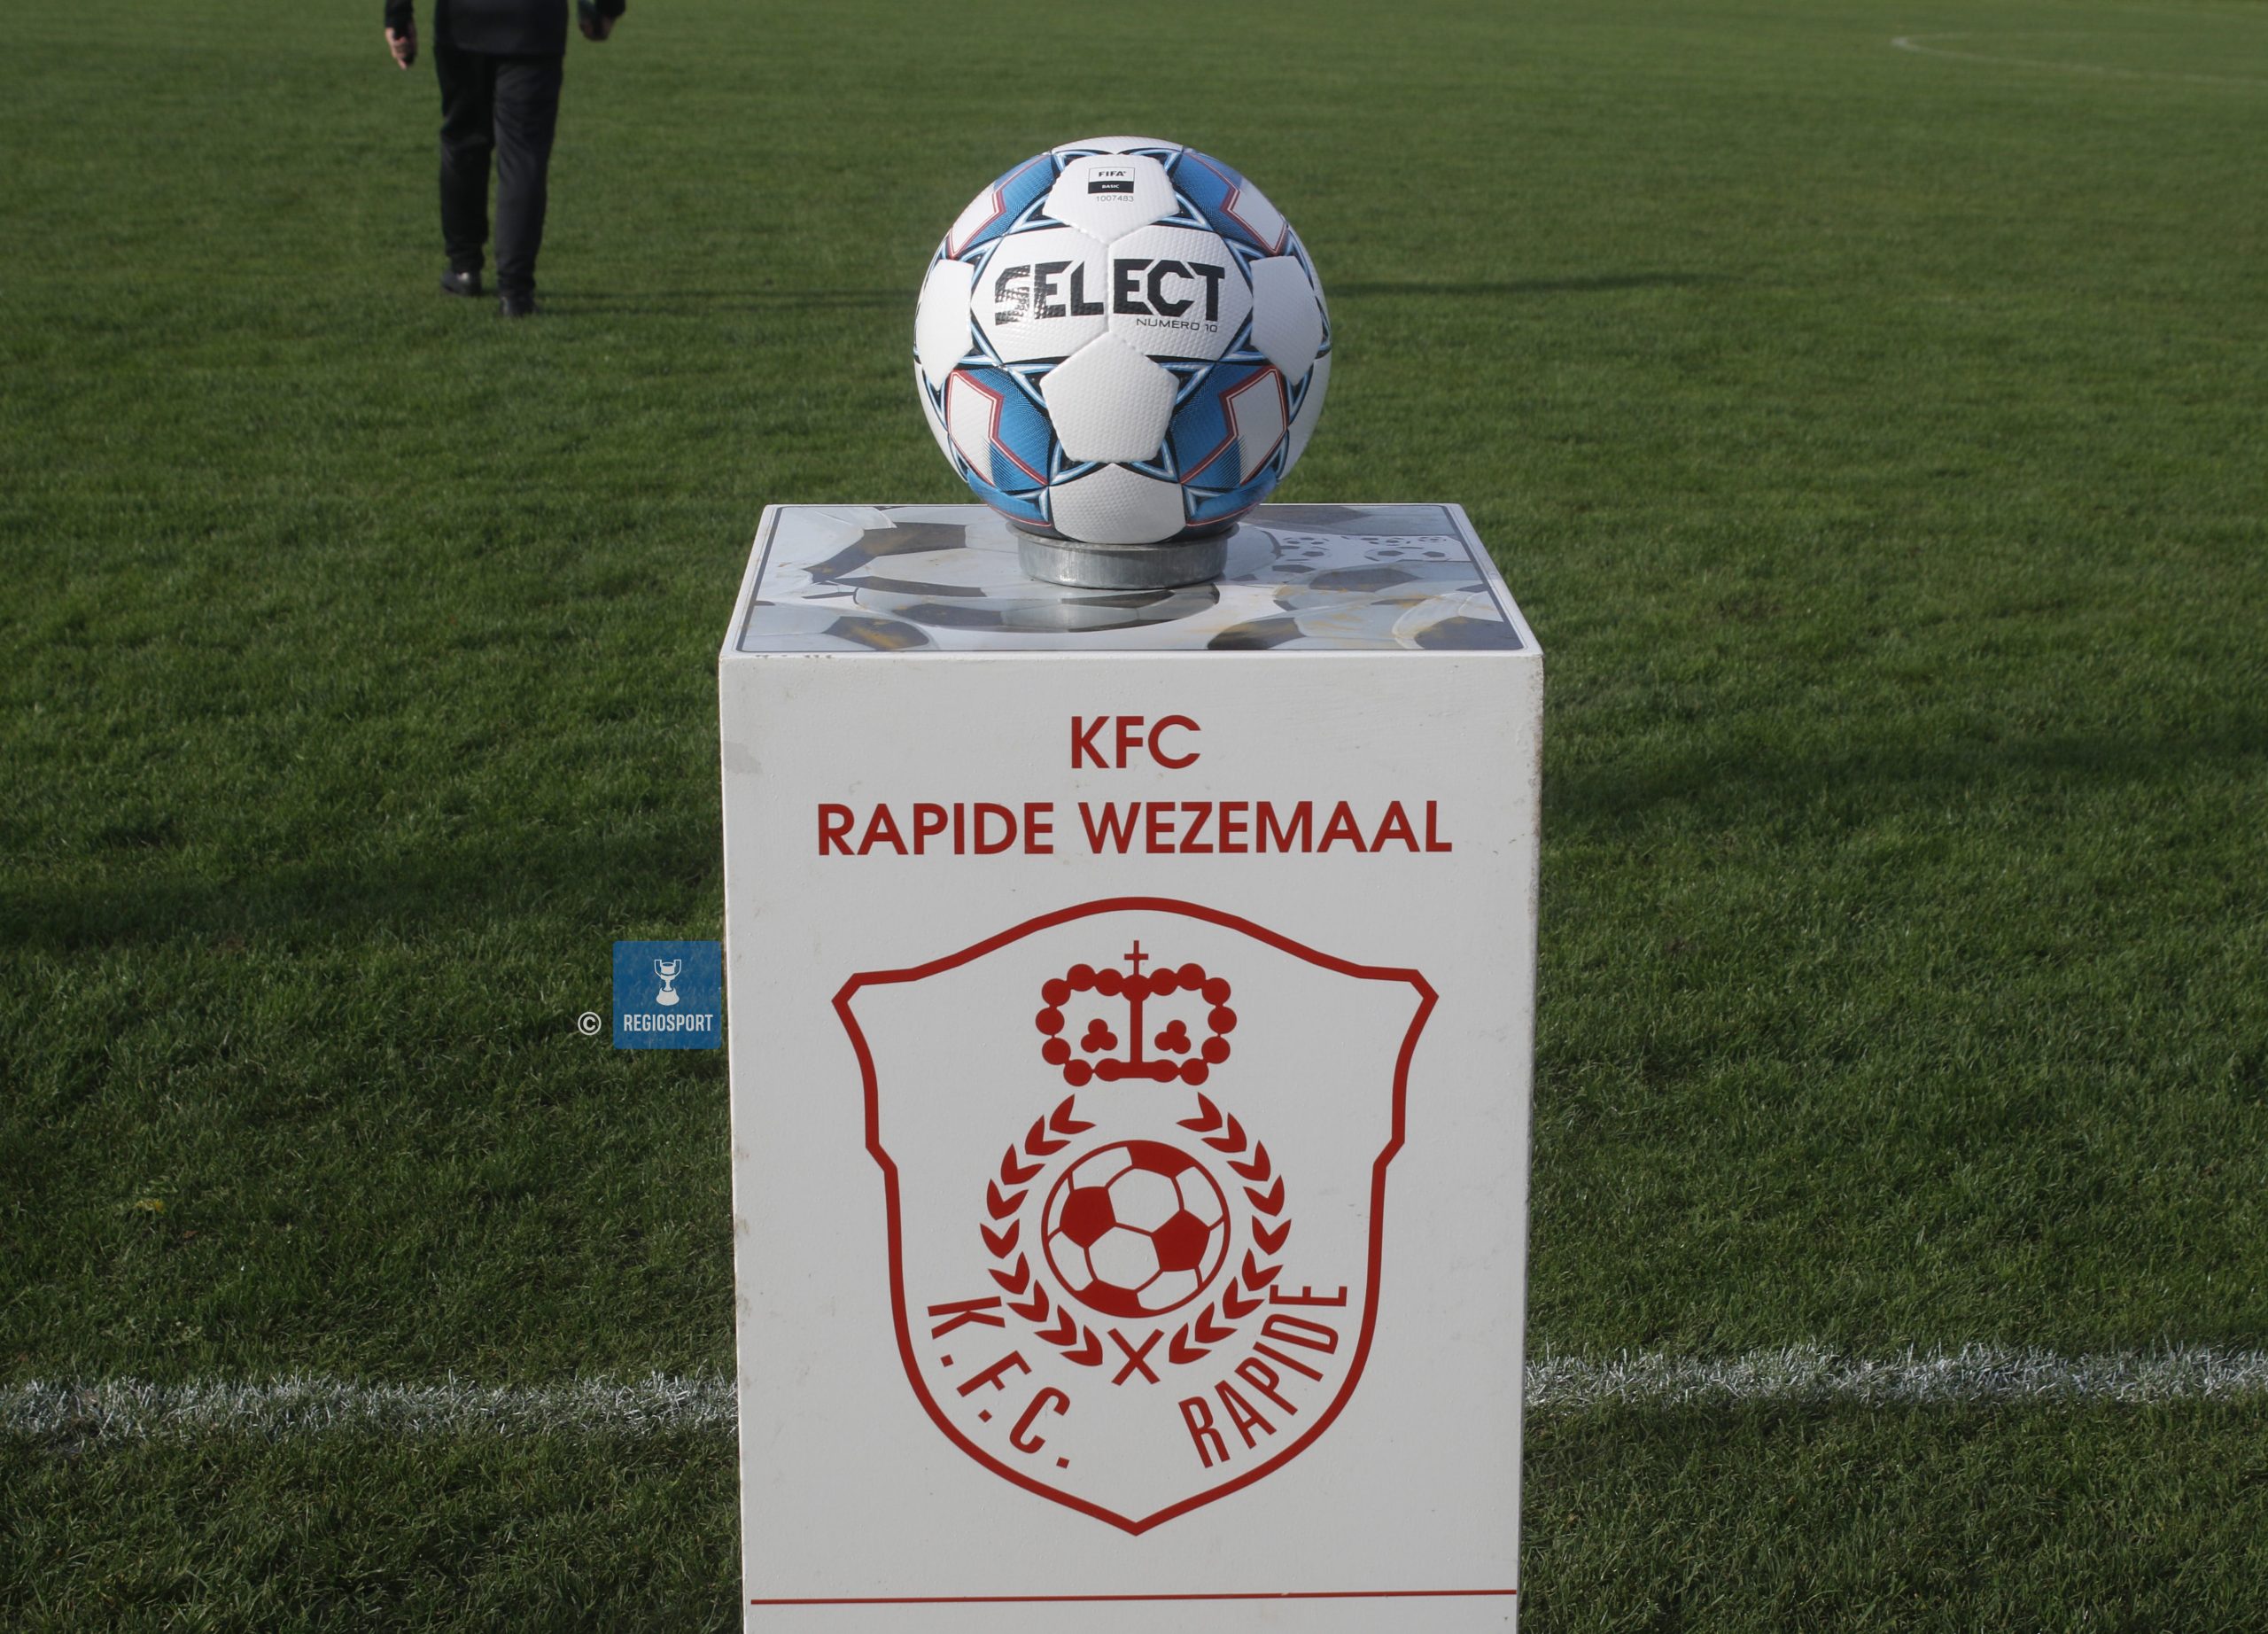 De wedstrijdbal van Rapide Wezemaal - RWL Sport in beeld